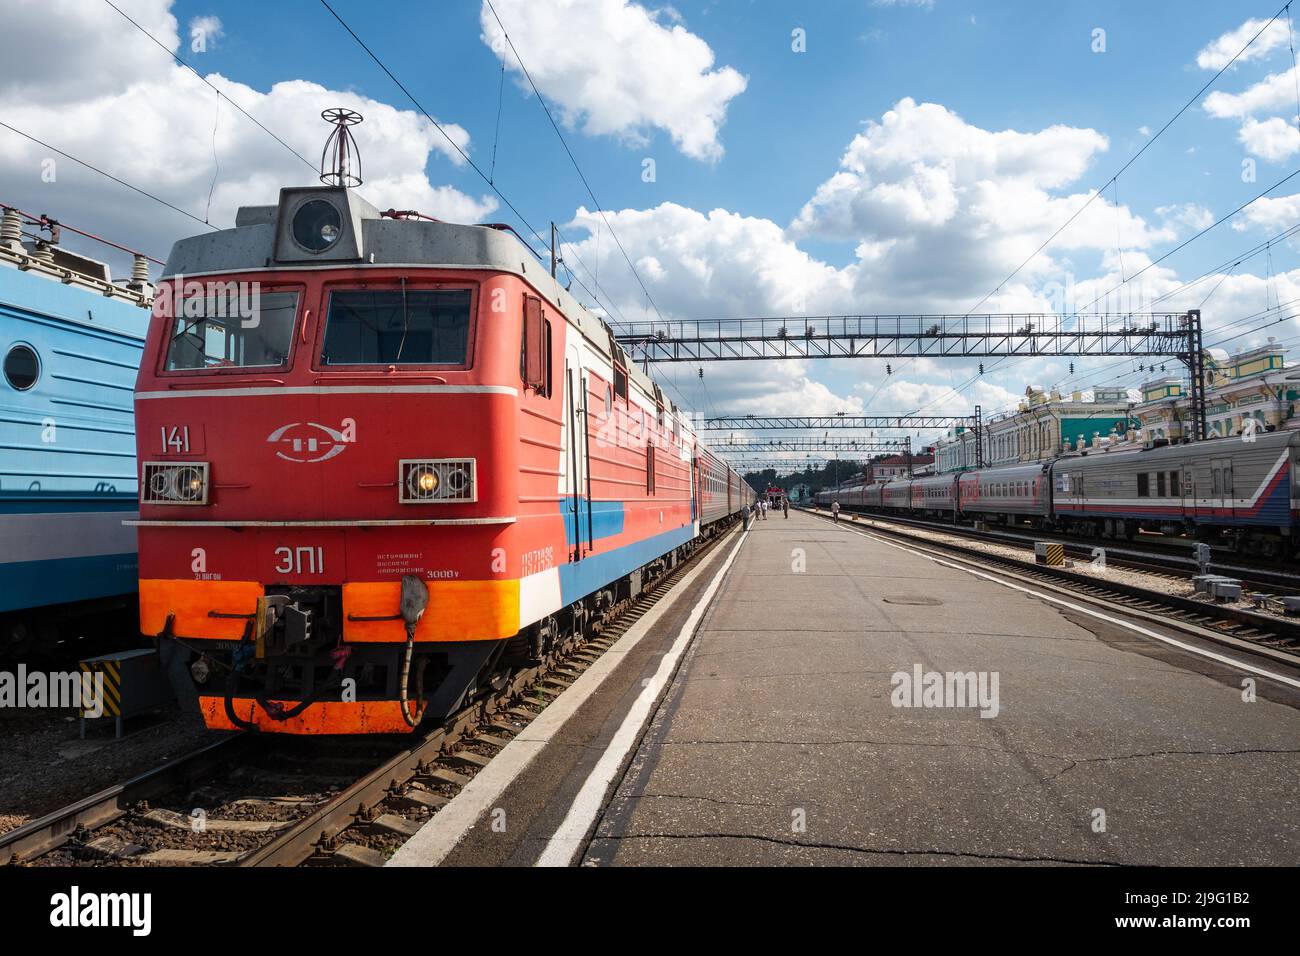 Treni alla stazione ferroviaria Irkutsk-Passazhirsky nella città di Irkutsk in Russia, una tappa importante lungo la ferrovia Trans-Siberiana. Foto Stock